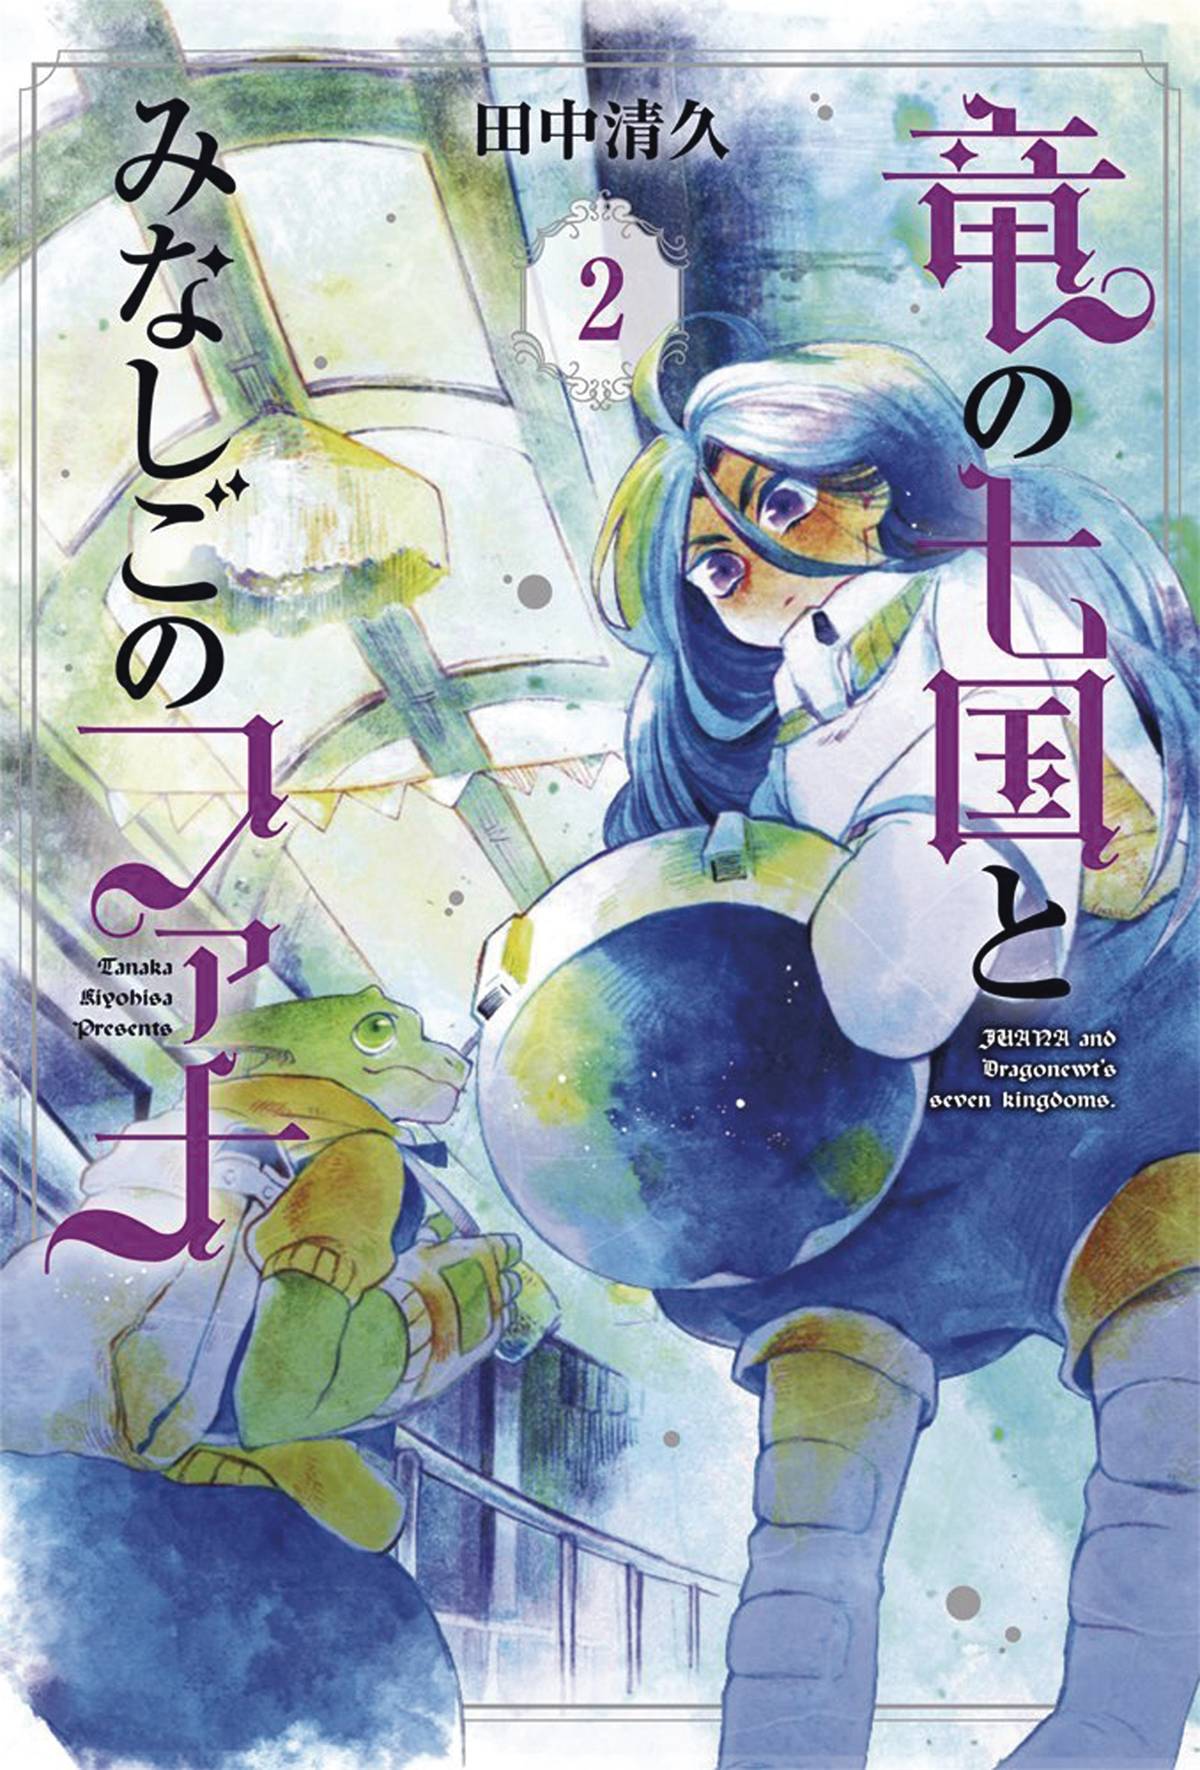 Juana & Dragonewts Seven Kingdoms Manga Volume 2